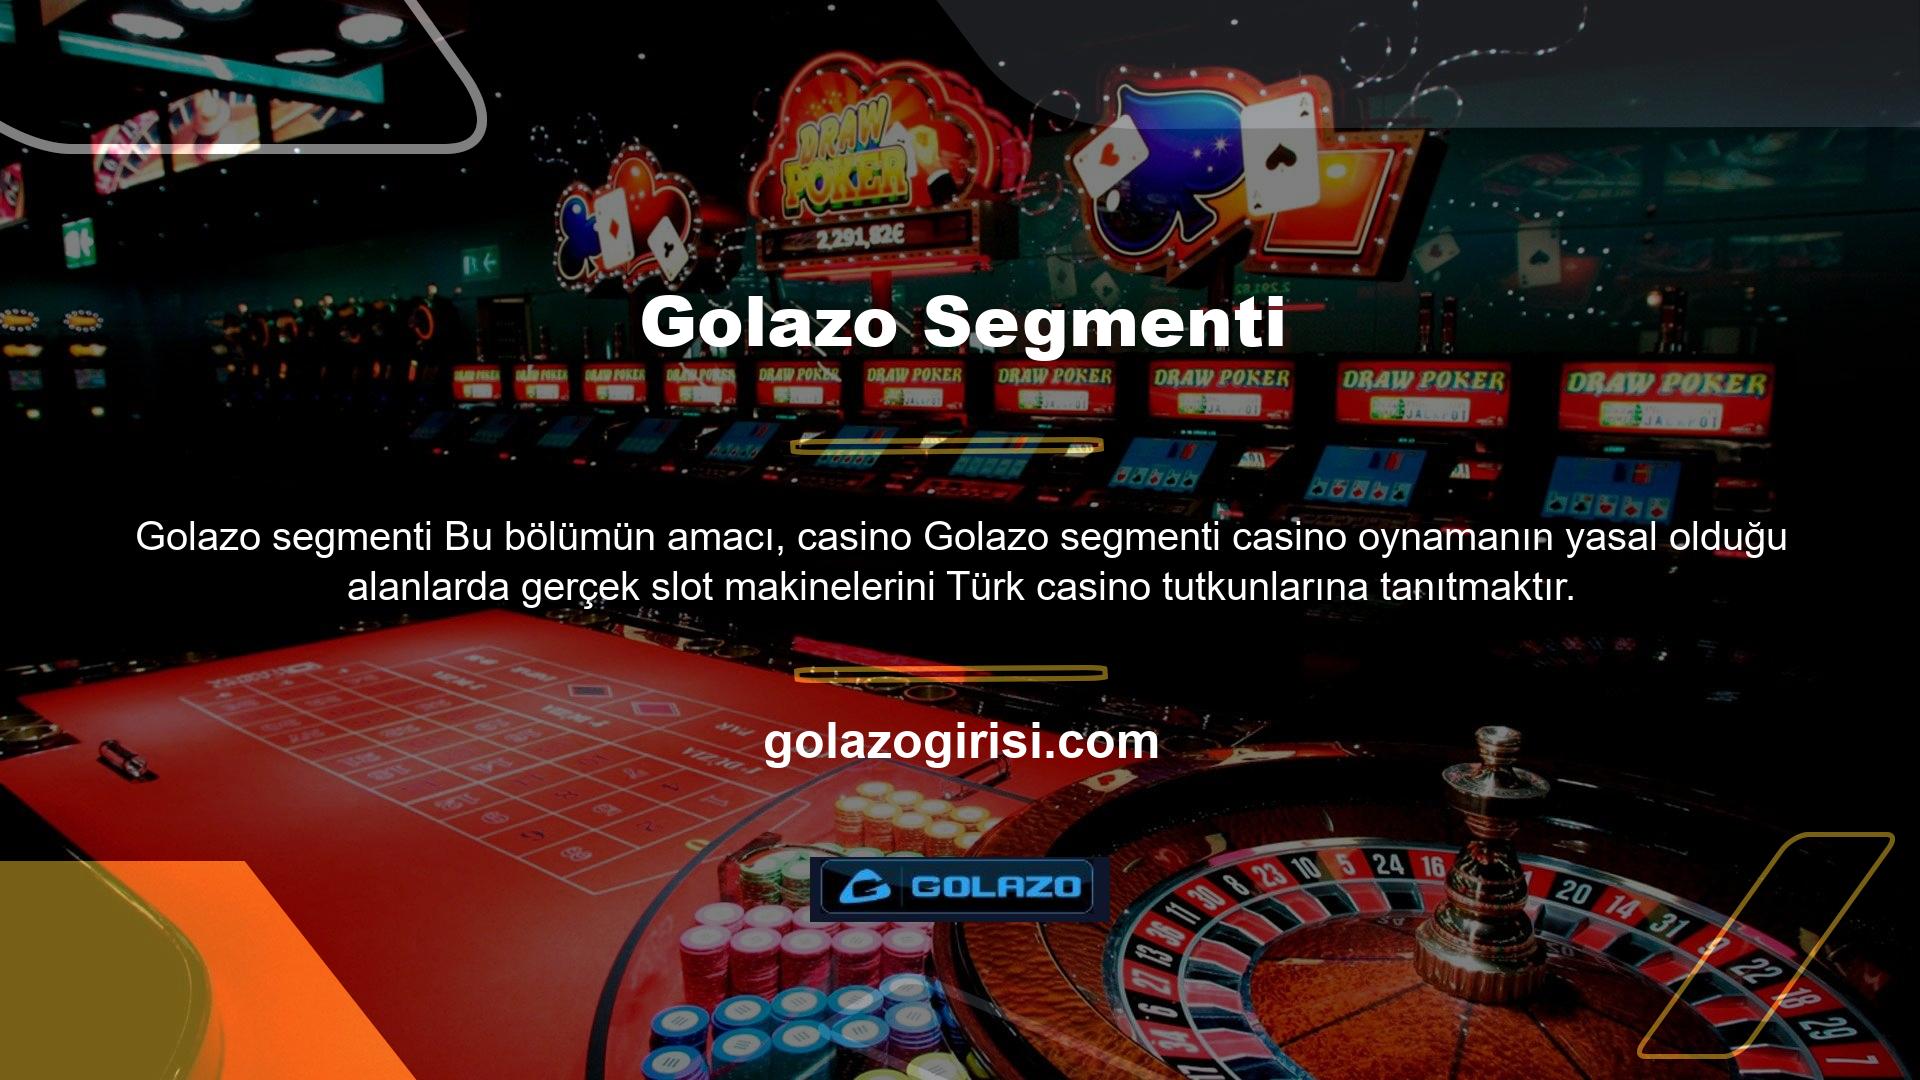 Kalite ve eğlence açısından en stressiz bahis bölümü olan Golazo online bölümü, farklı bir deneyim arayan kullanıcılara özel Golazo segmenti sunmaktadır